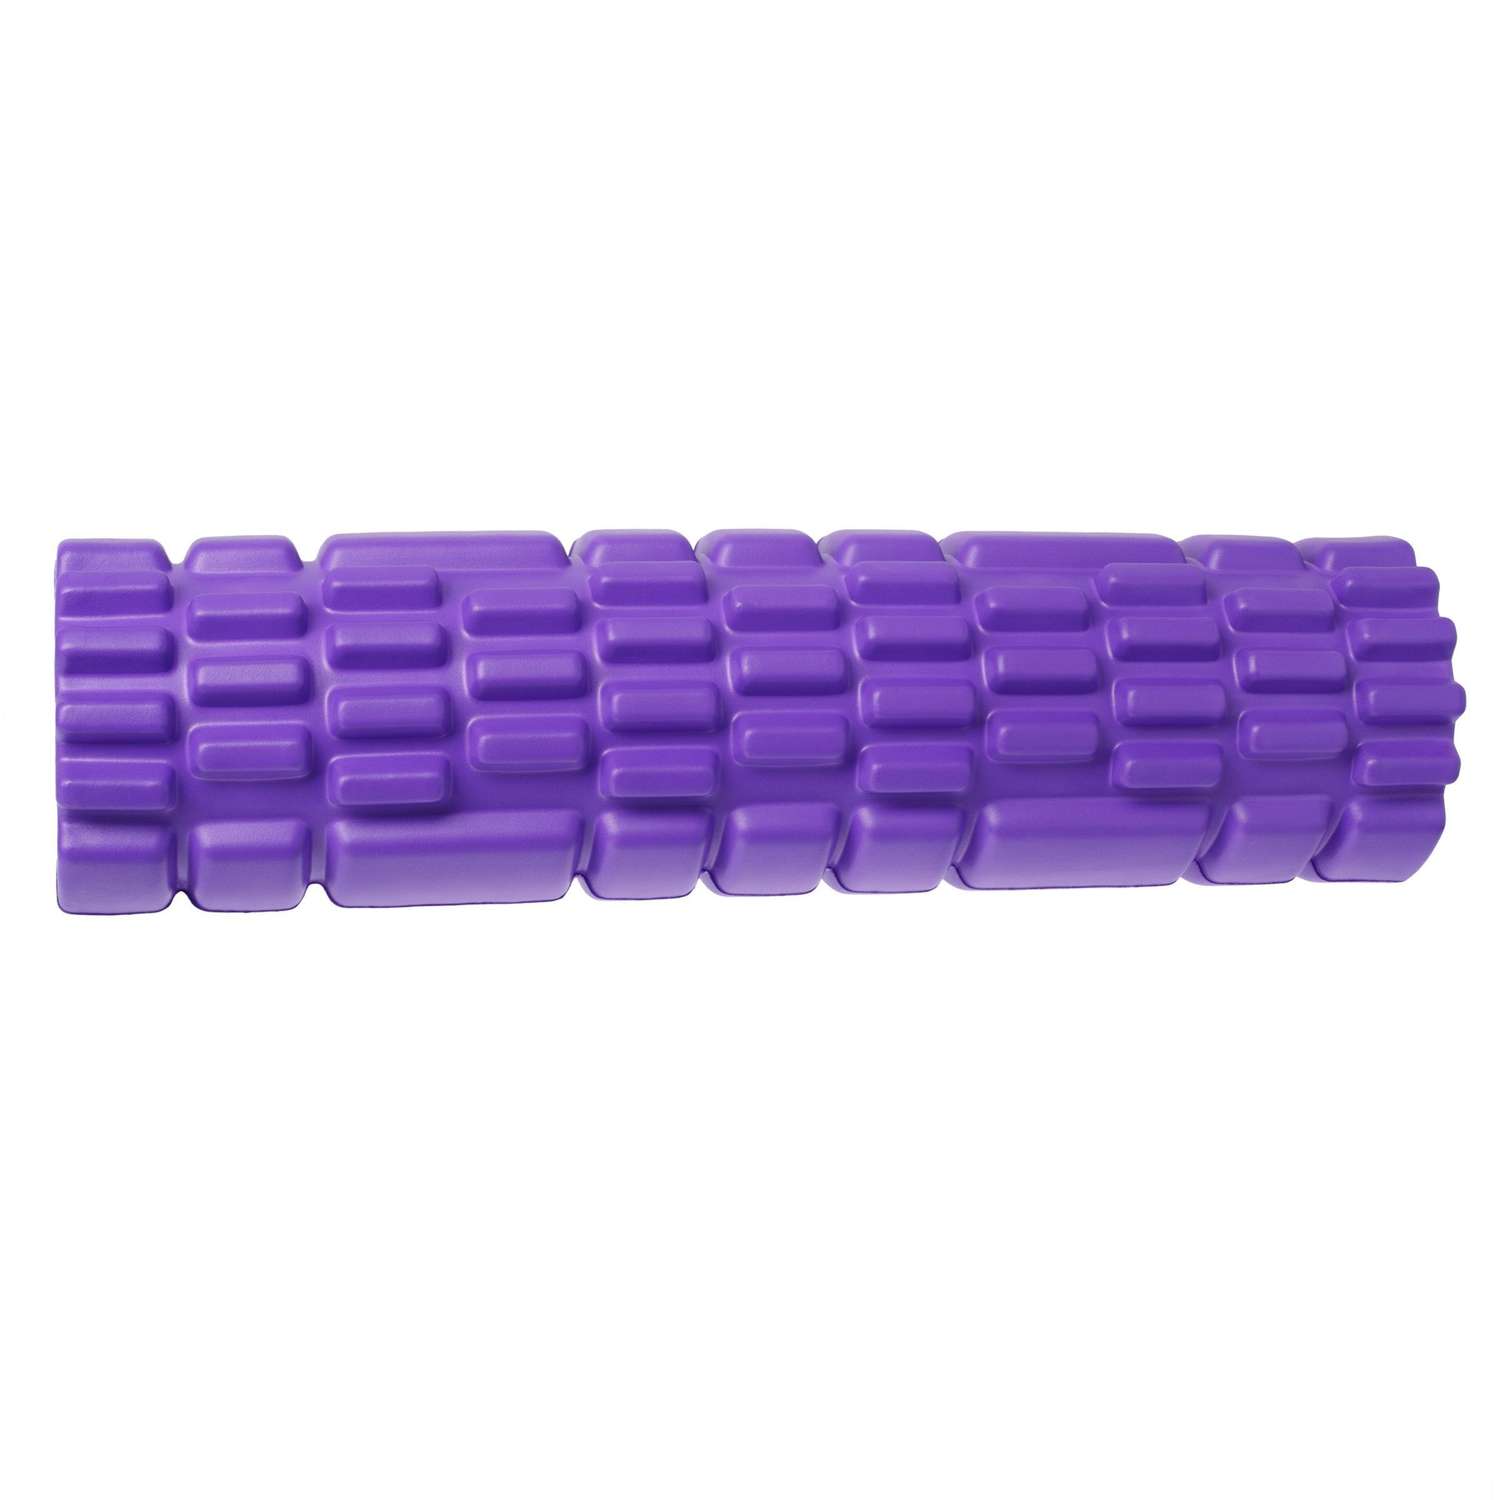 Ролик массажный STRONG BODY спортивный для фитнеса МФР йоги и пилатес 30 см х 8 см фиолетовый - фото 2